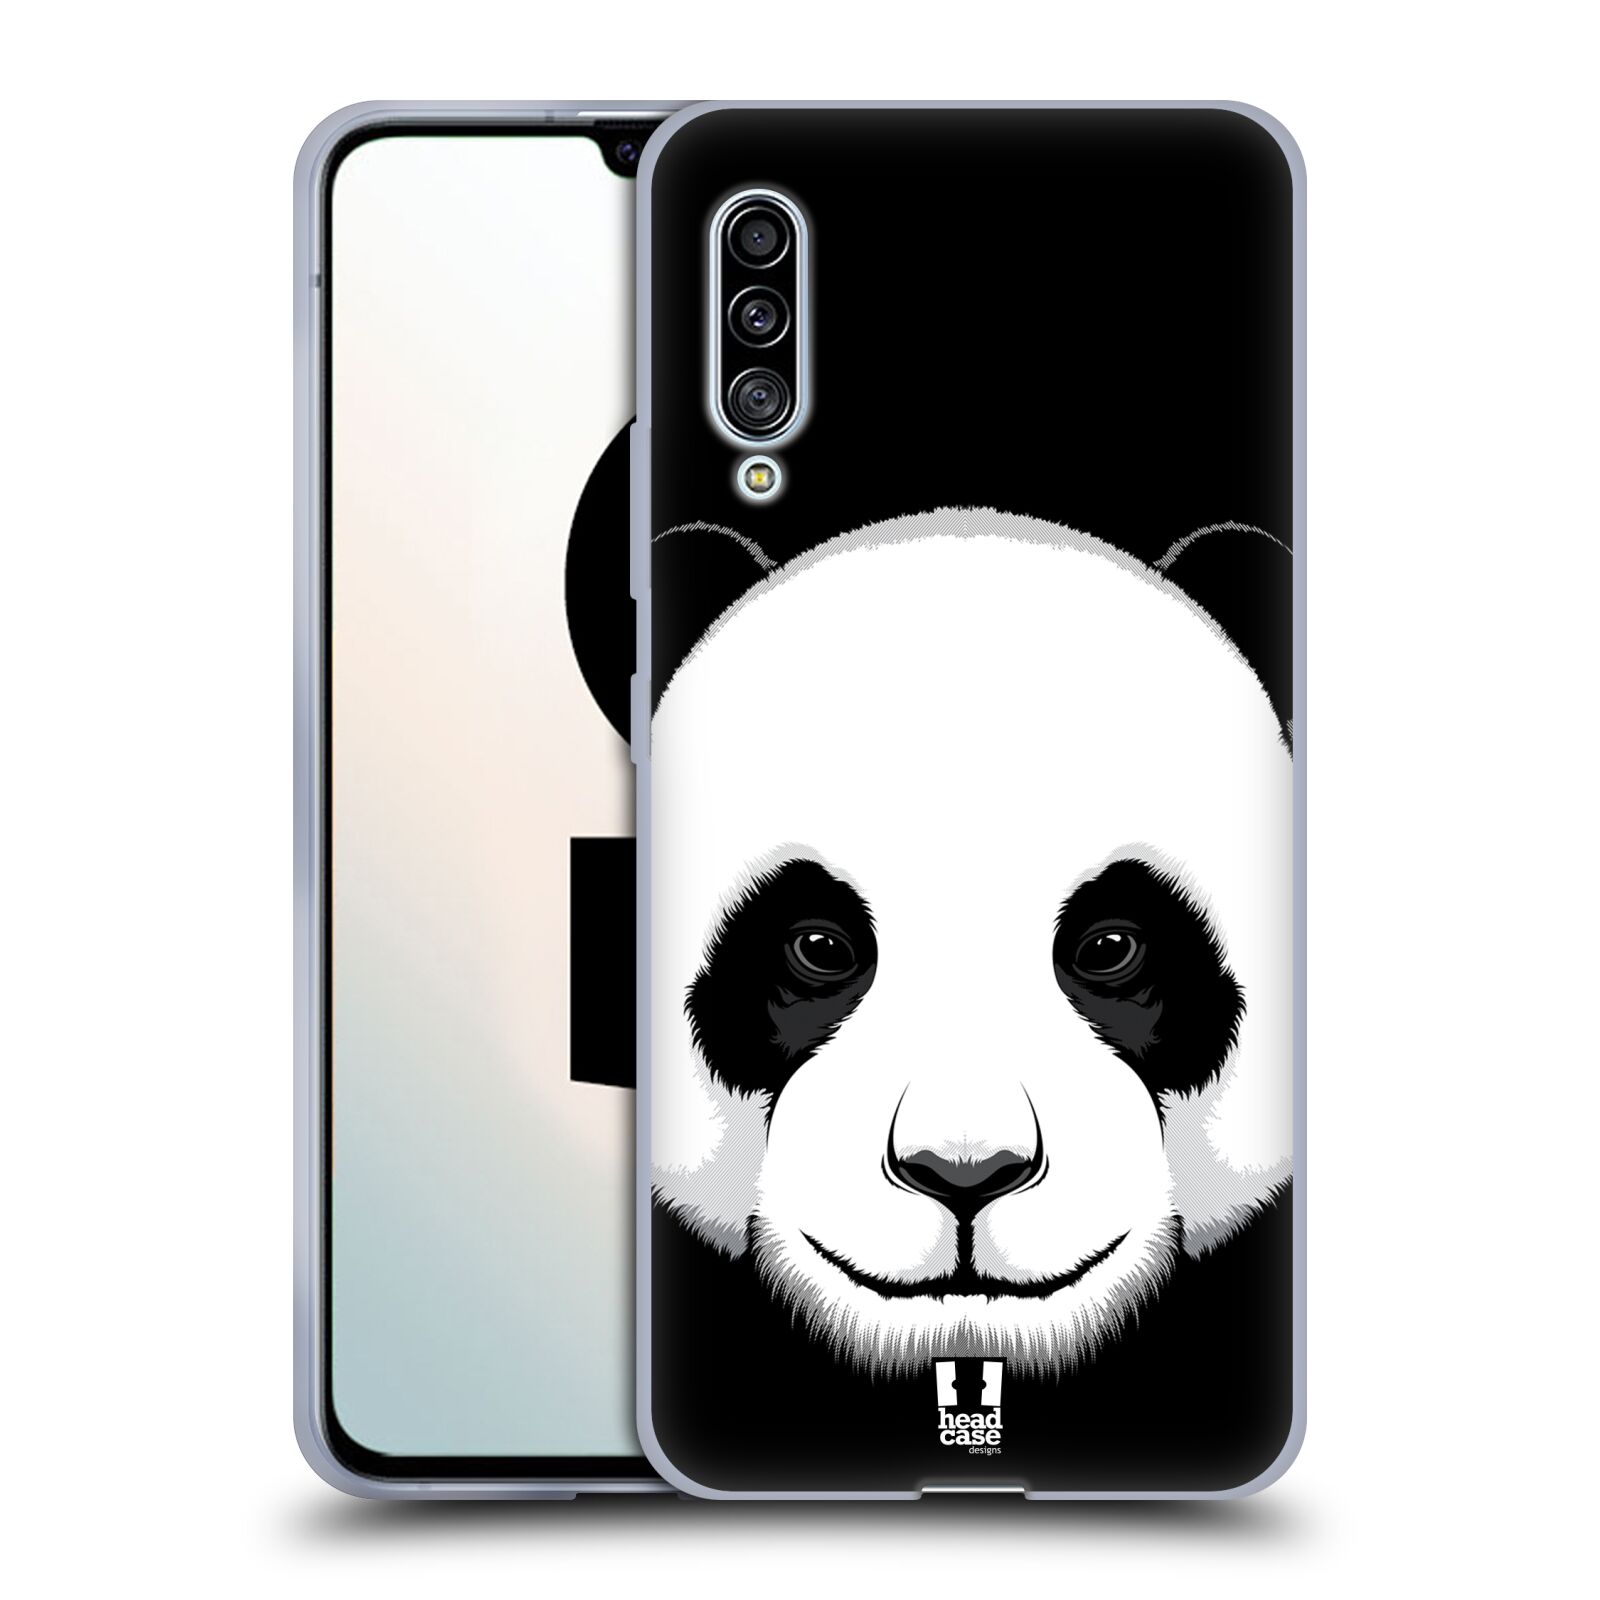 Plastový obal HEAD CASE na mobil Samsung Galaxy A90 5G vzor Zvíře kreslená tvář panda